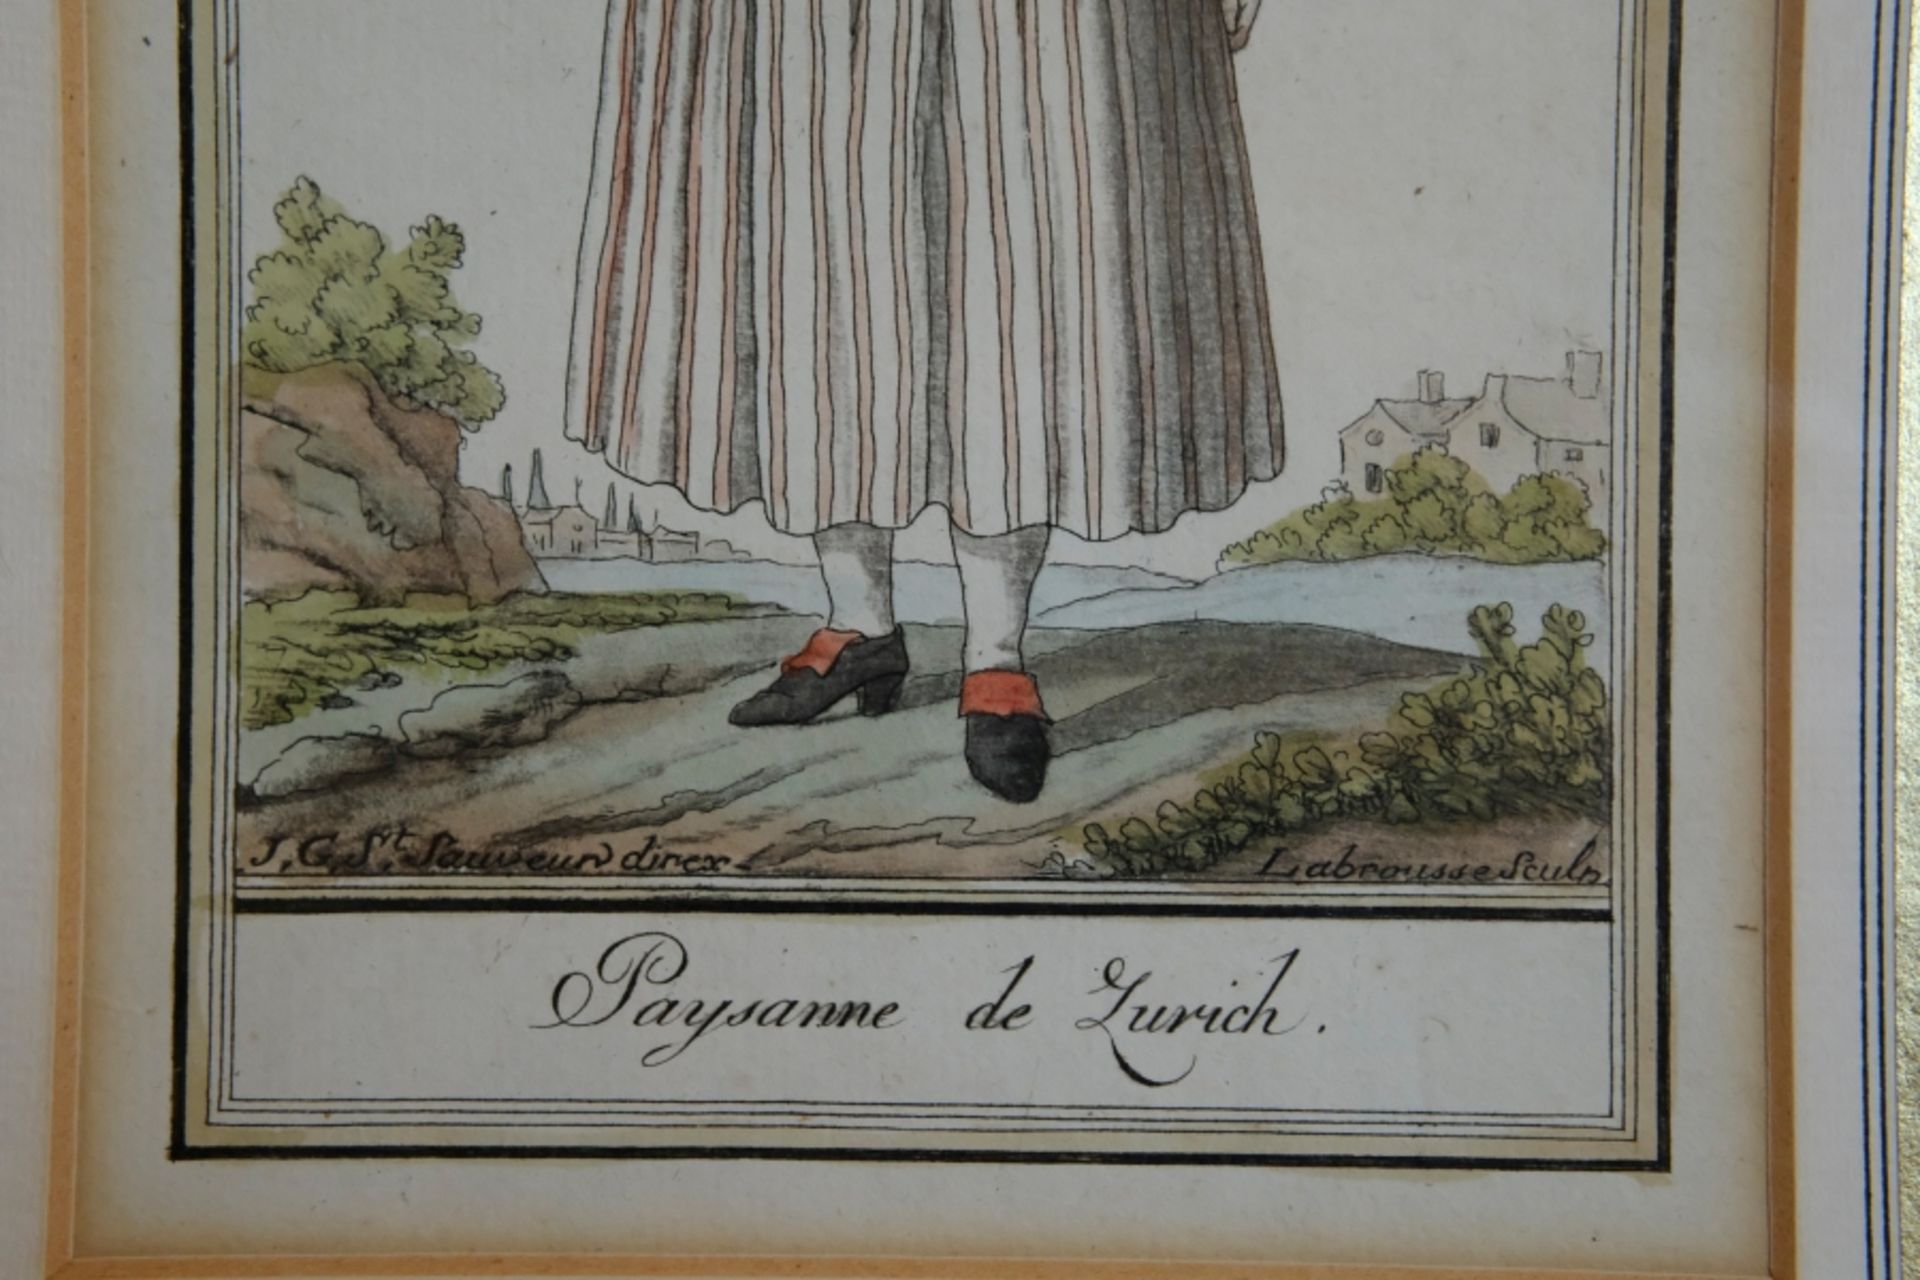 ZÜRICHERIN, "Paysanne de Zurich", Frau in traditioneller Tracht mit Korb unter dem Arm, kleiner Lan - Bild 3 aus 3